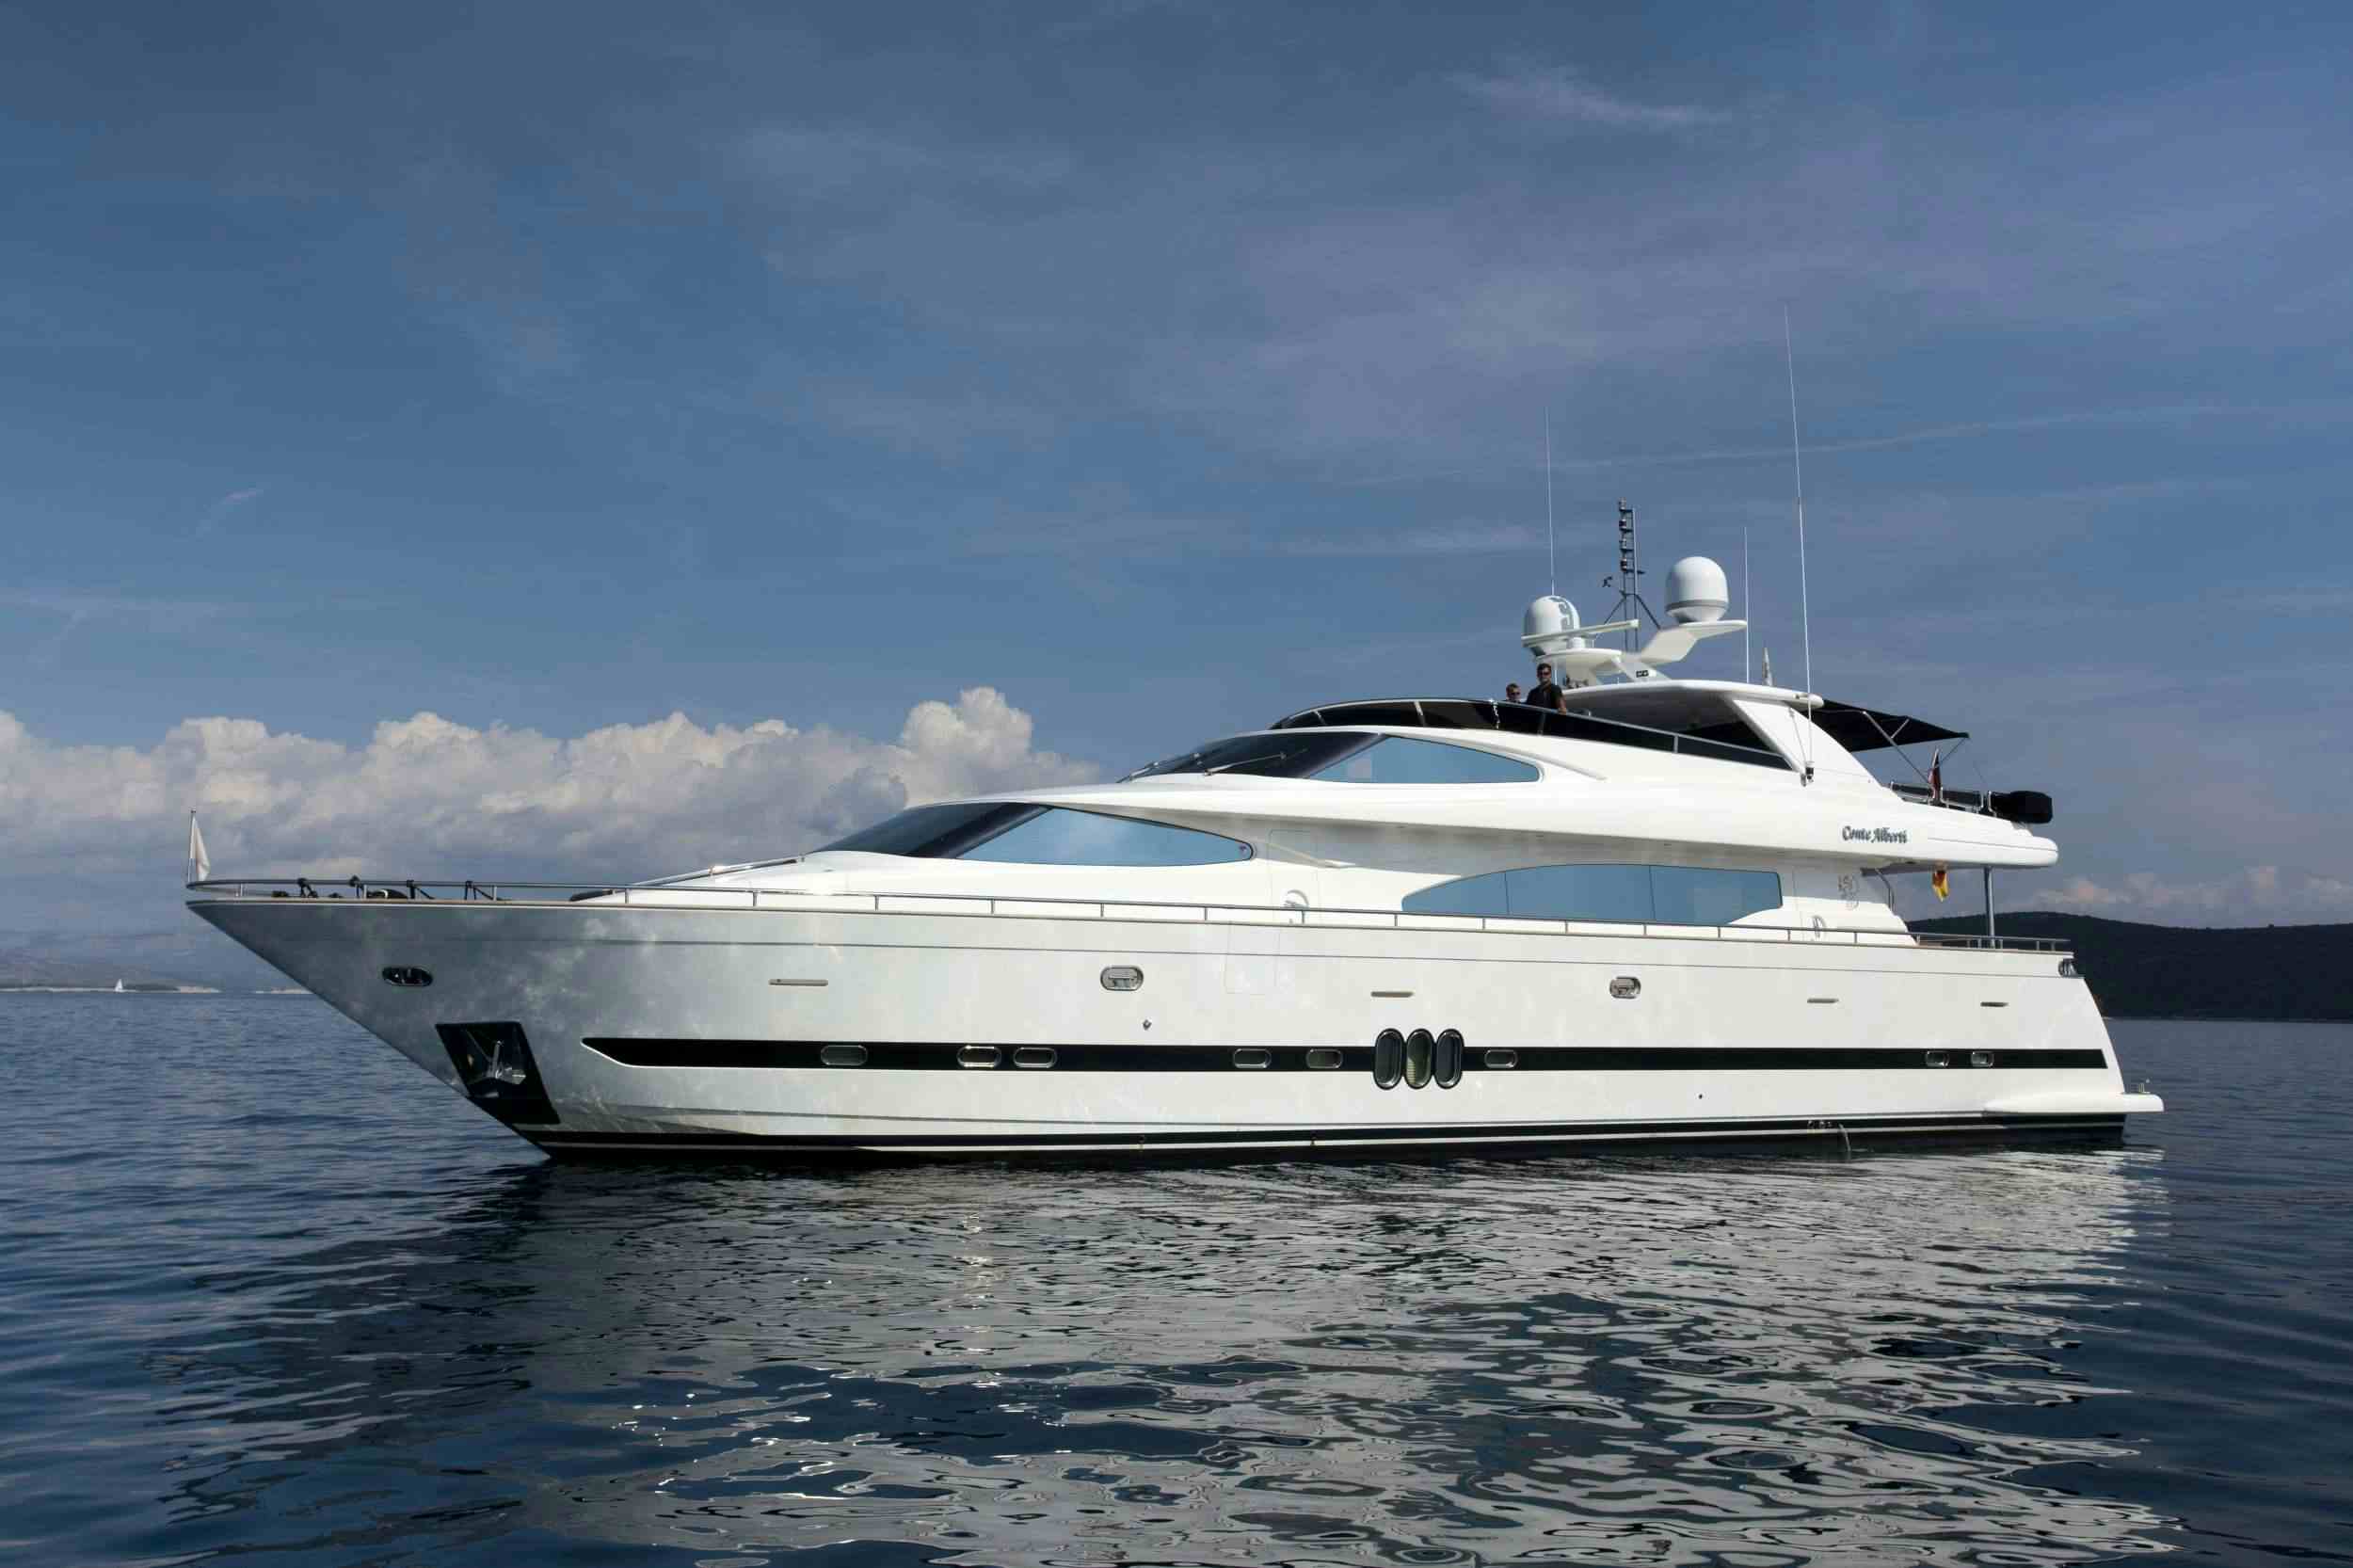 CONTE ALBERTI - Yacht Charter Komolac & Boat hire in Croatia 1